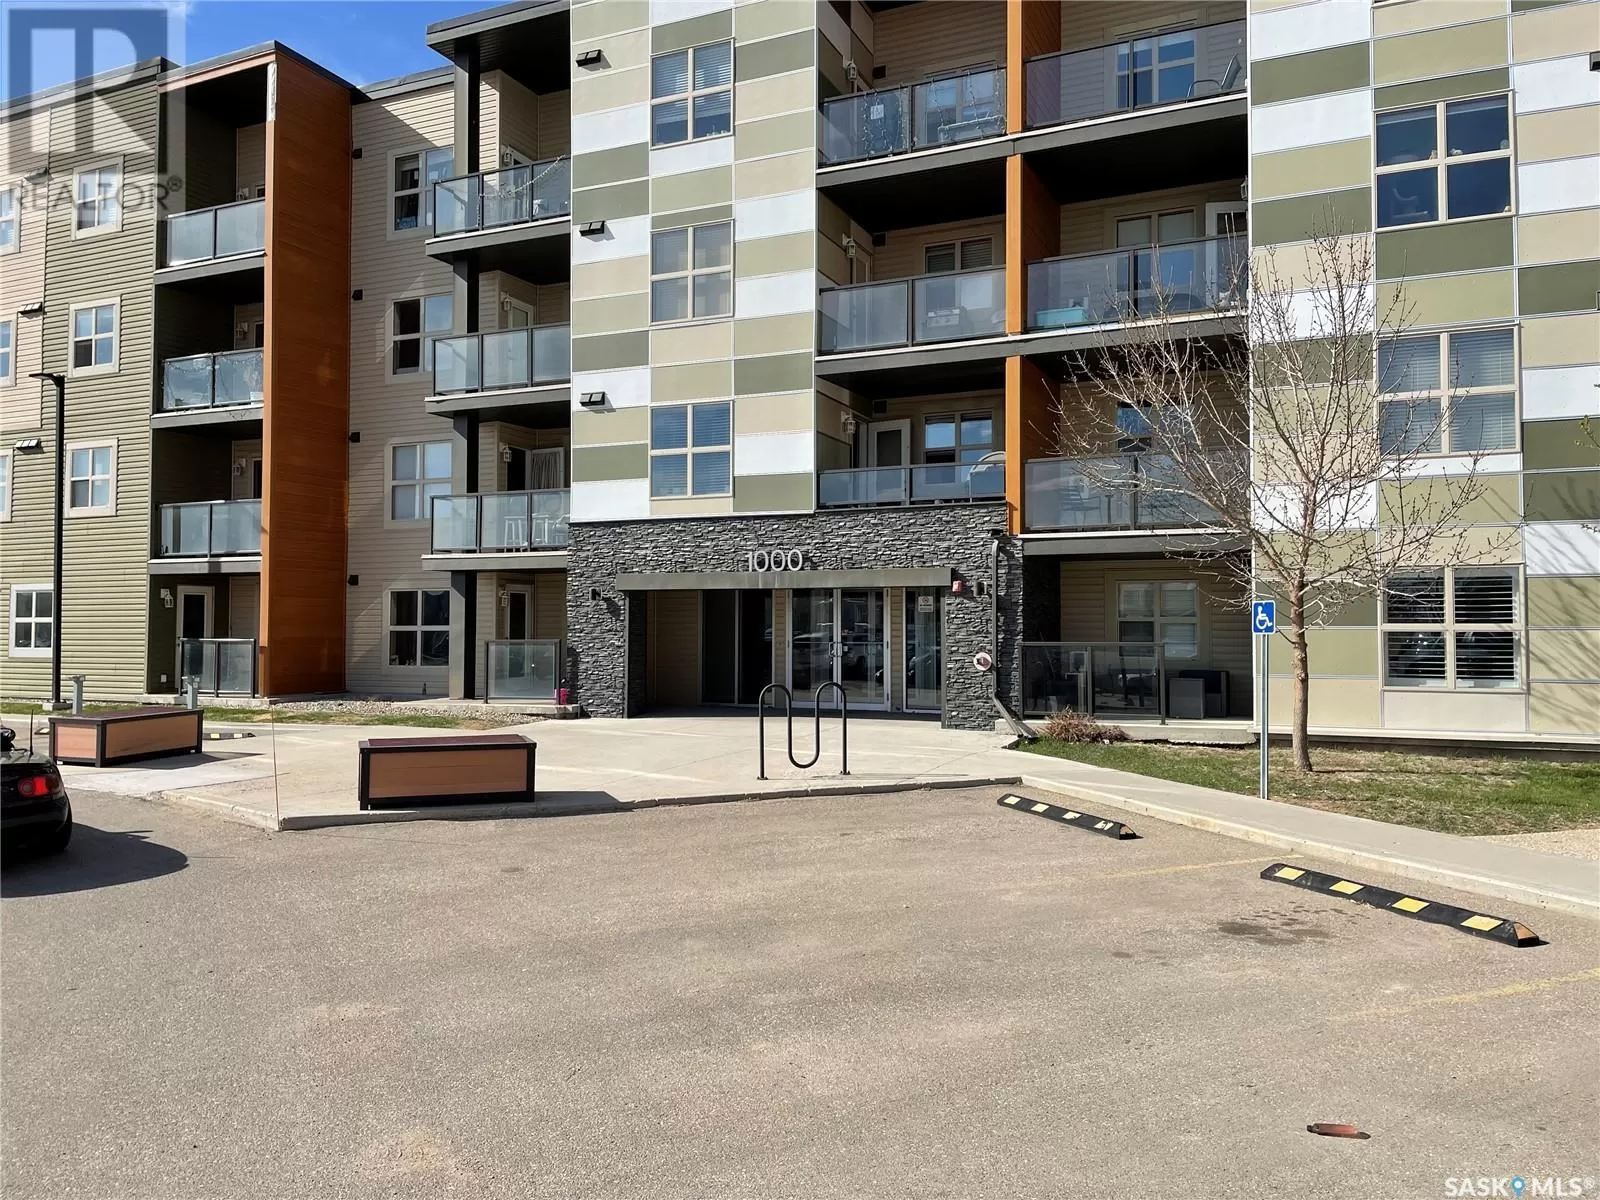 Apartment for rent: 1407 5500 Mitchinson Way, Regina, Saskatchewan S4W 0N9